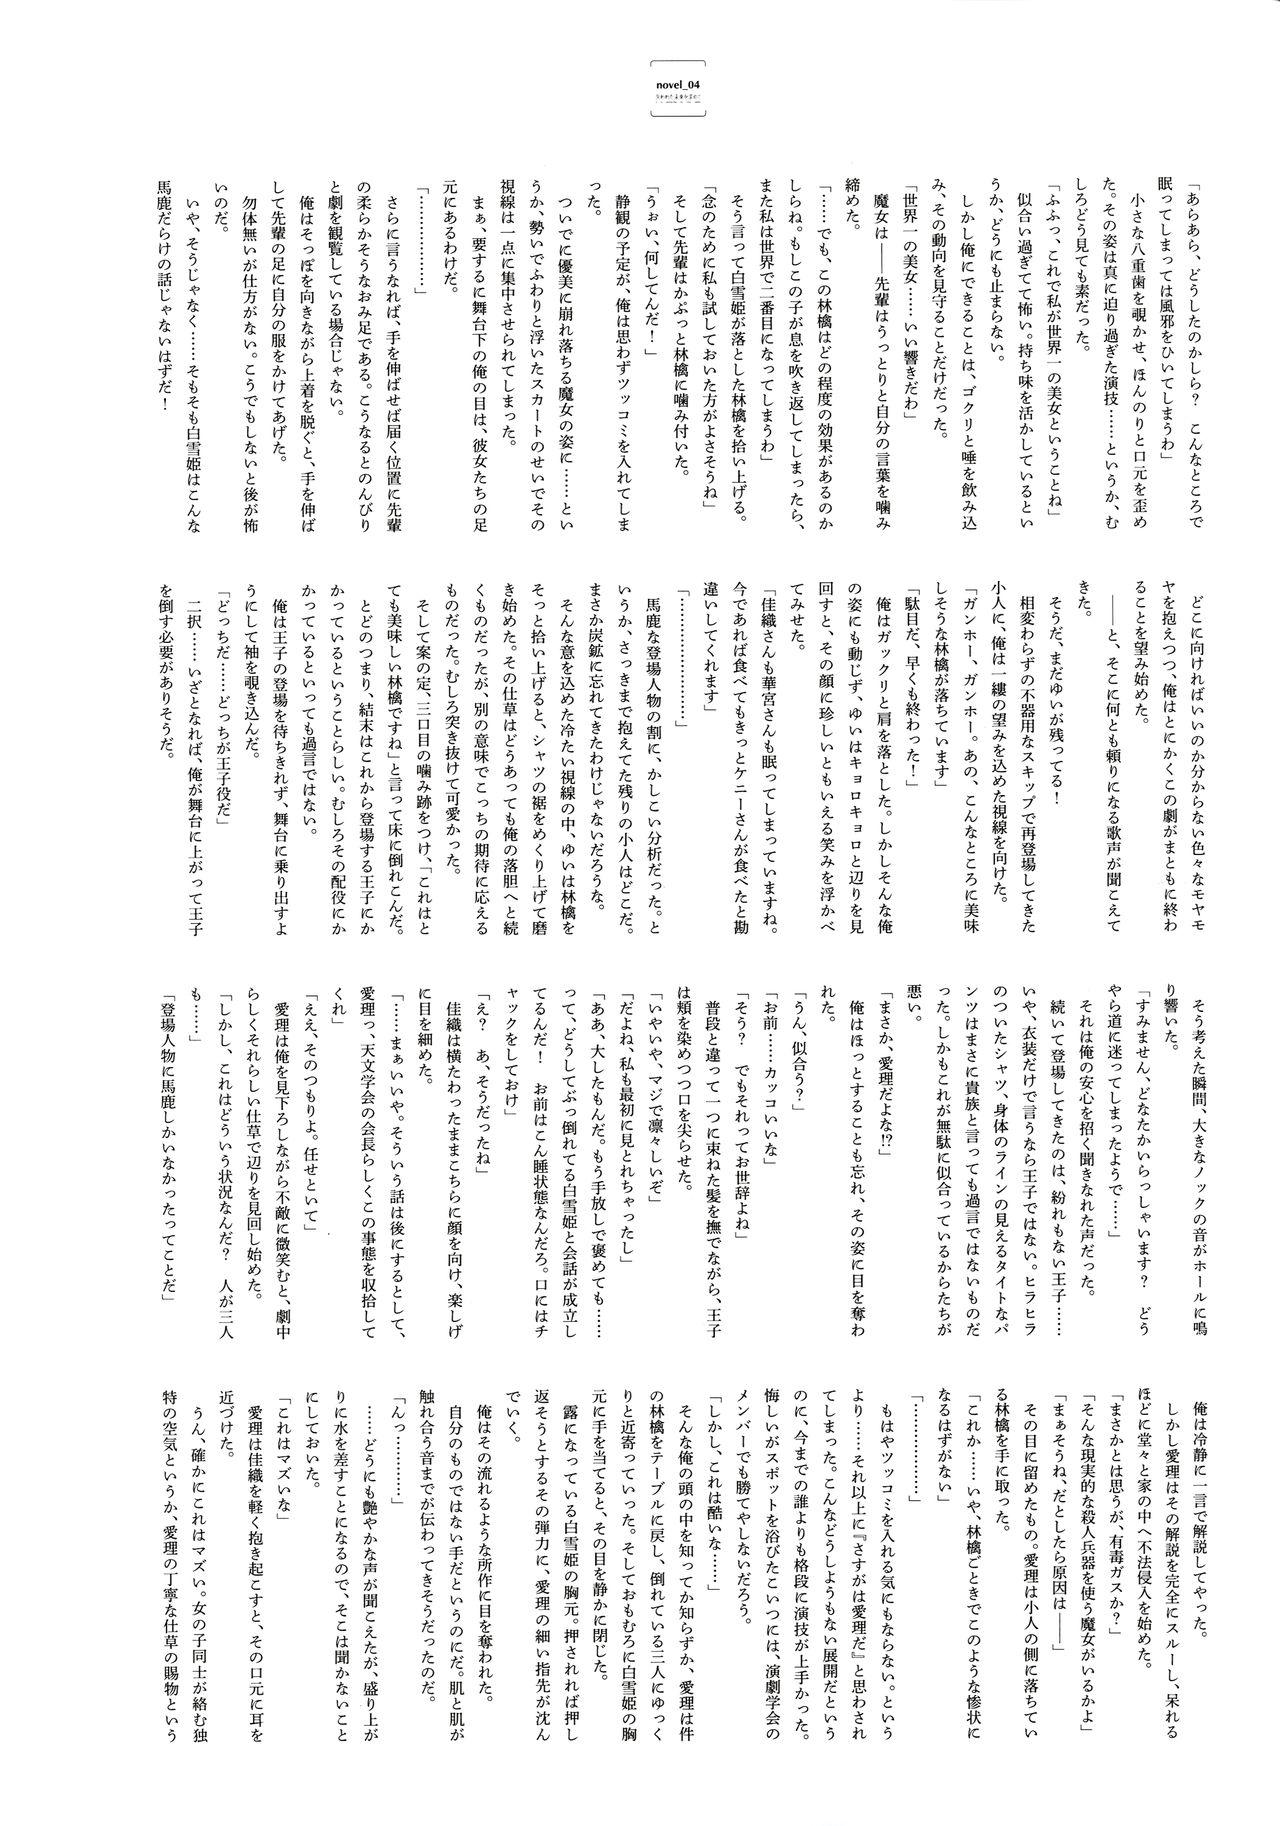 American Ushinawareta Mirai o Motomete Visual Fanbook - In search of the lost future Bigcock - Page 118